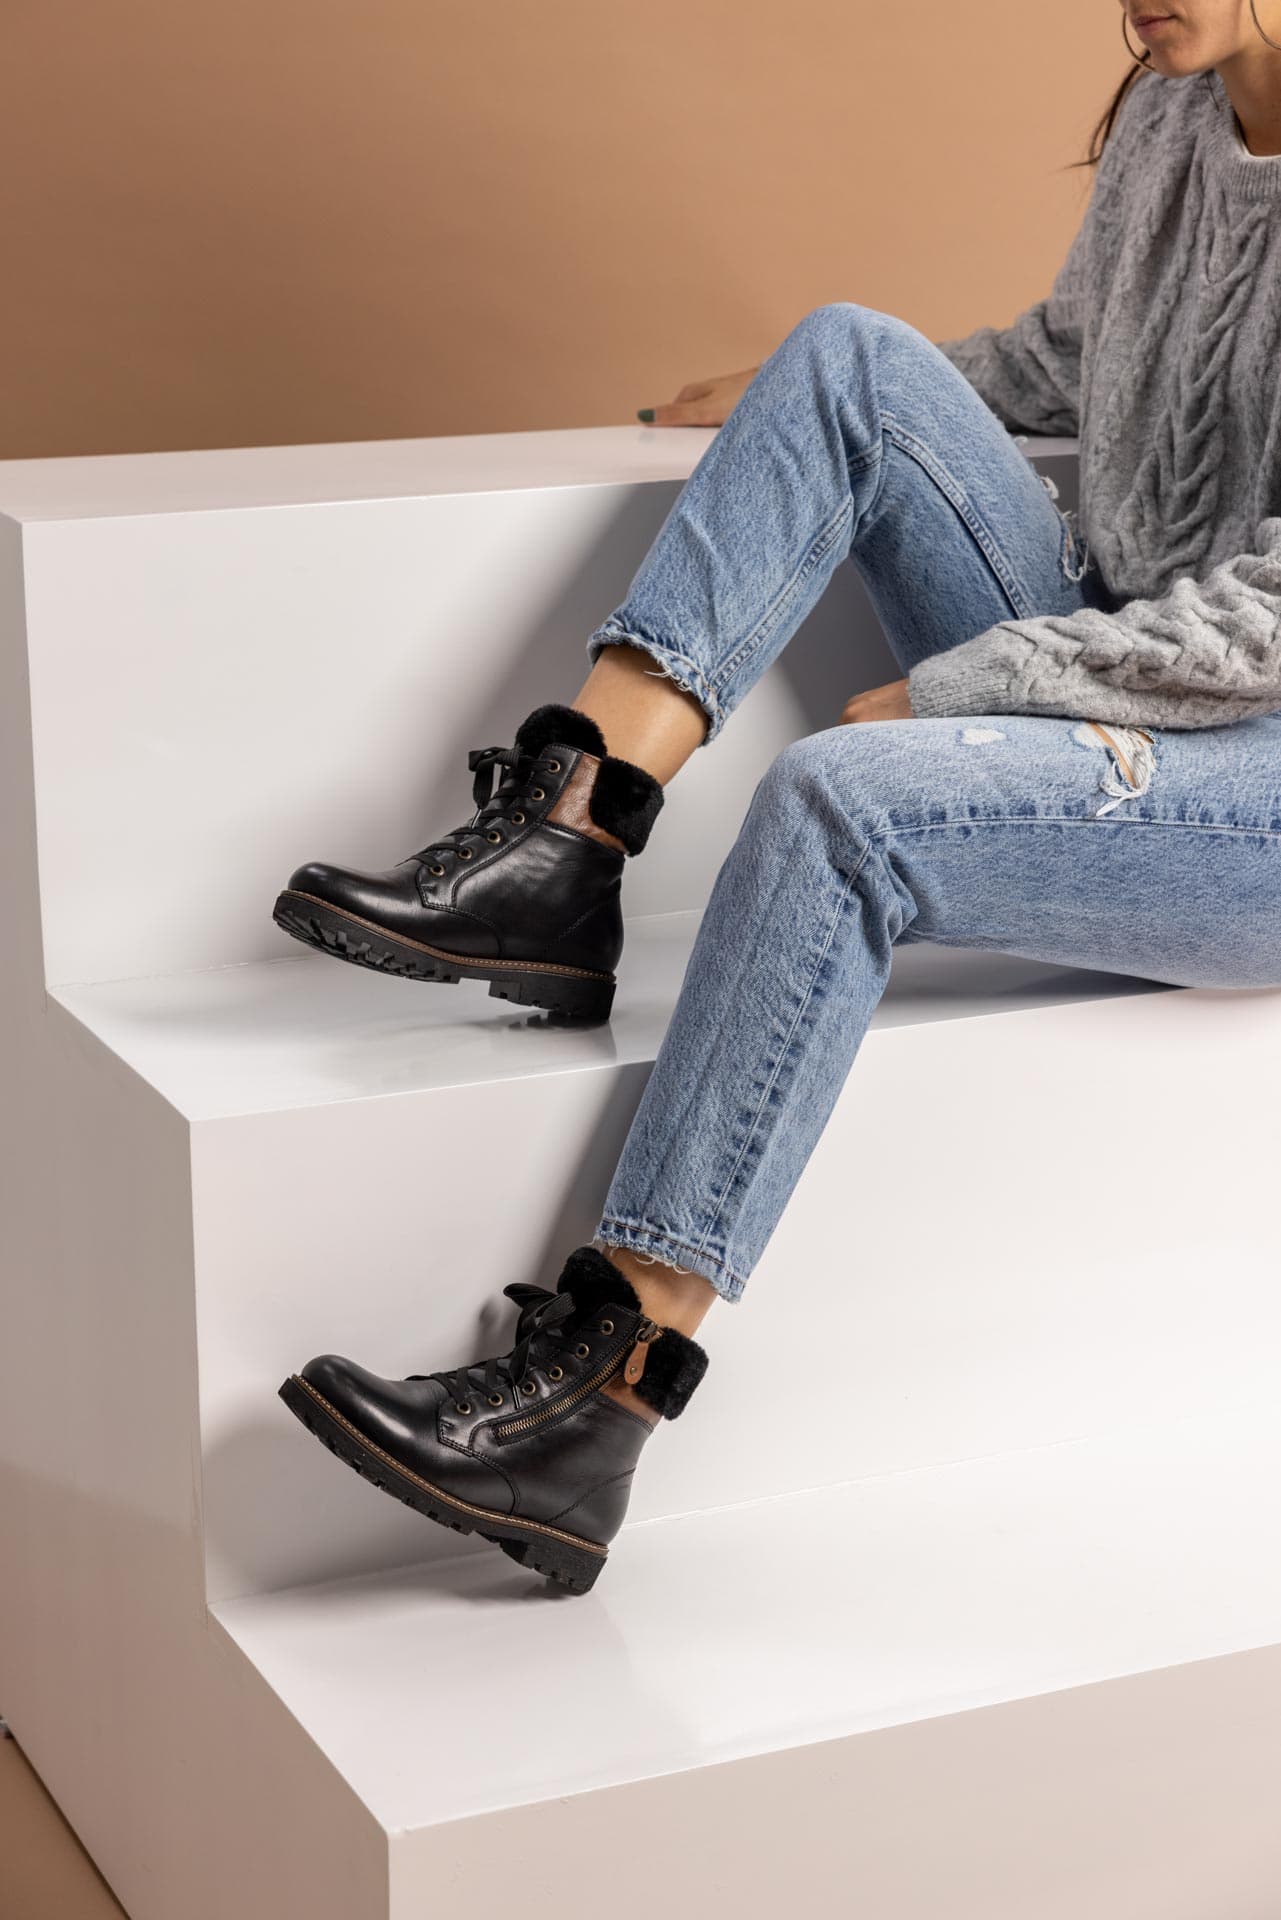 Schwarze Stiefeletten warm gefüttert aus Glattleder mit Reißverschluss und Schnürung und Wechselfußbett. Passend zu den Schuhen trägt die Frau auf der Treppe einen grauen Strickpullover und eine helle Mom-Jeans.